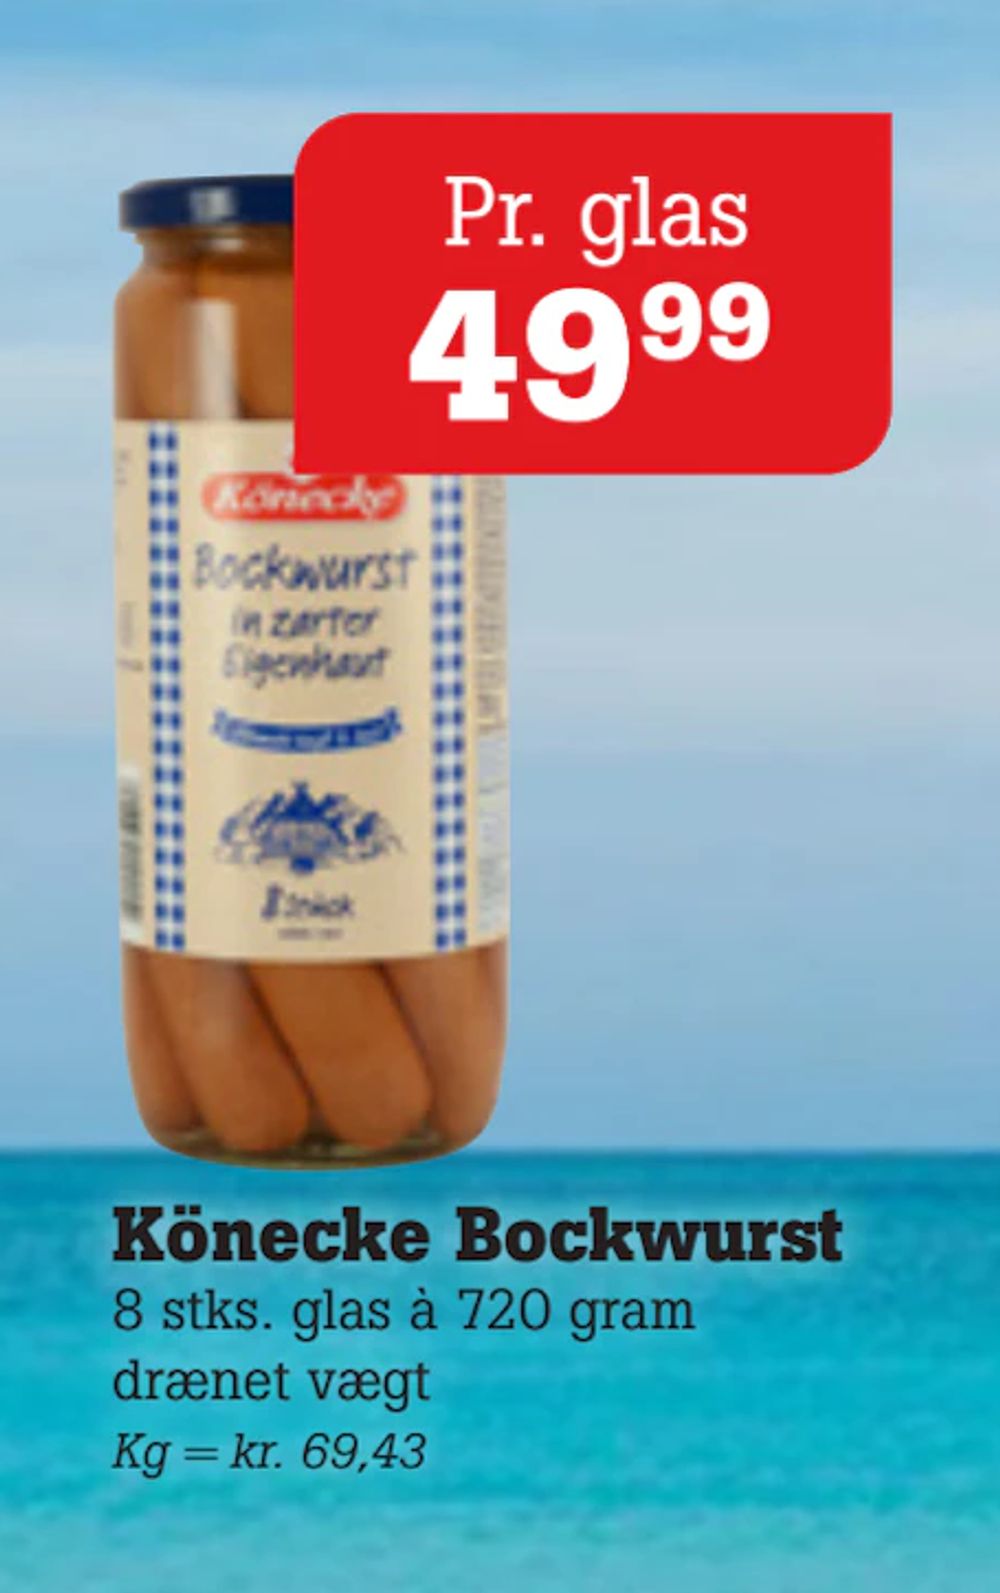 Tilbud på Könecke Bockwurst fra Poetzsch Padborg til 49,99 kr.